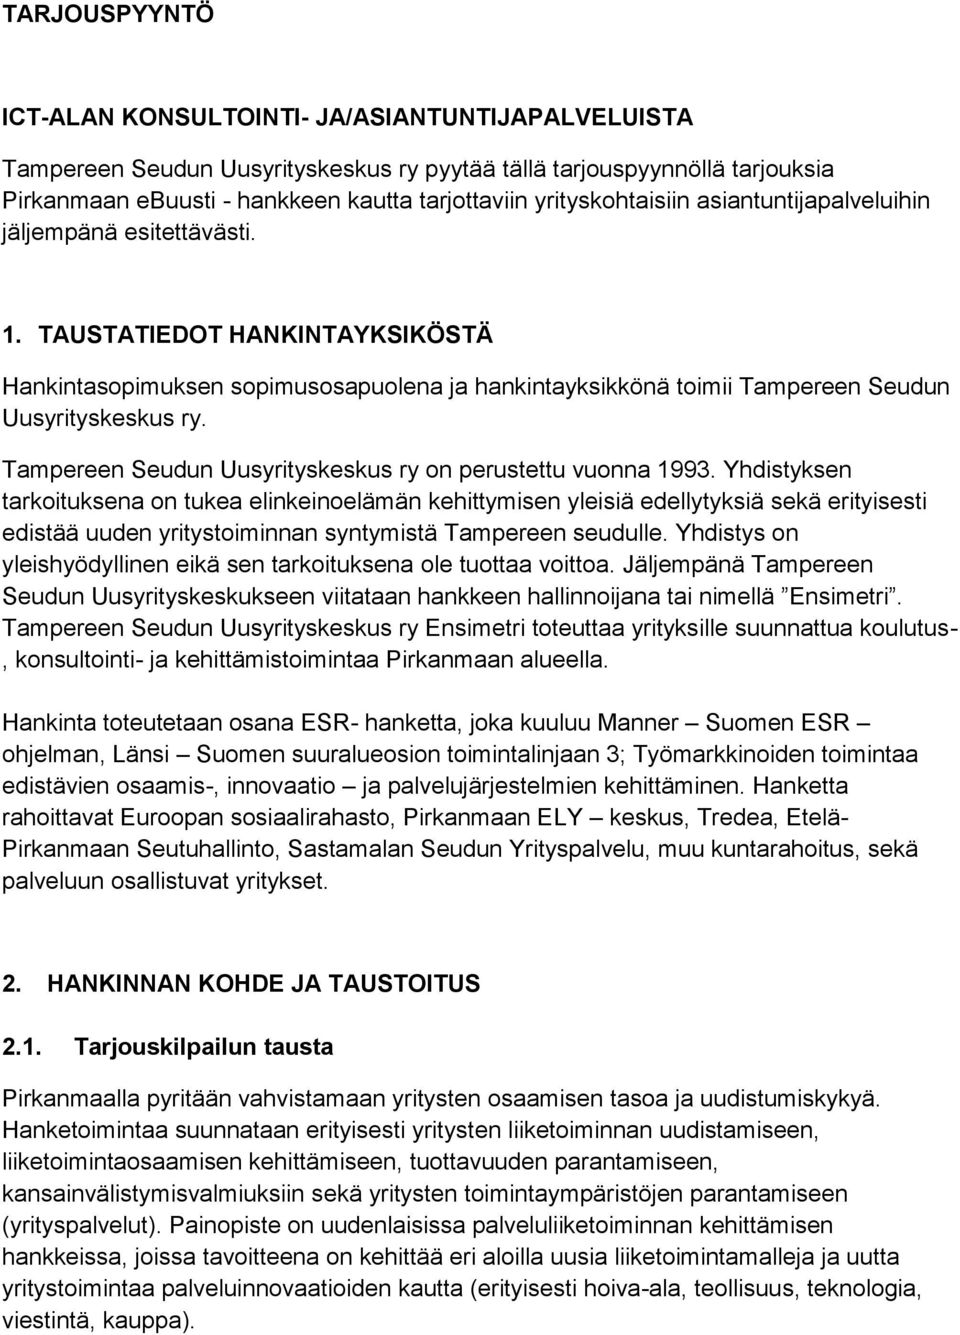 TAUSTATIEDOT HANKINTAYKSIKÖSTÄ Hankintasopimuksen sopimusosapuolena ja hankintayksikkönä toimii Tampereen Seudun Uusyrityskeskus ry. Tampereen Seudun Uusyrityskeskus ry on perustettu vuonna 1993.